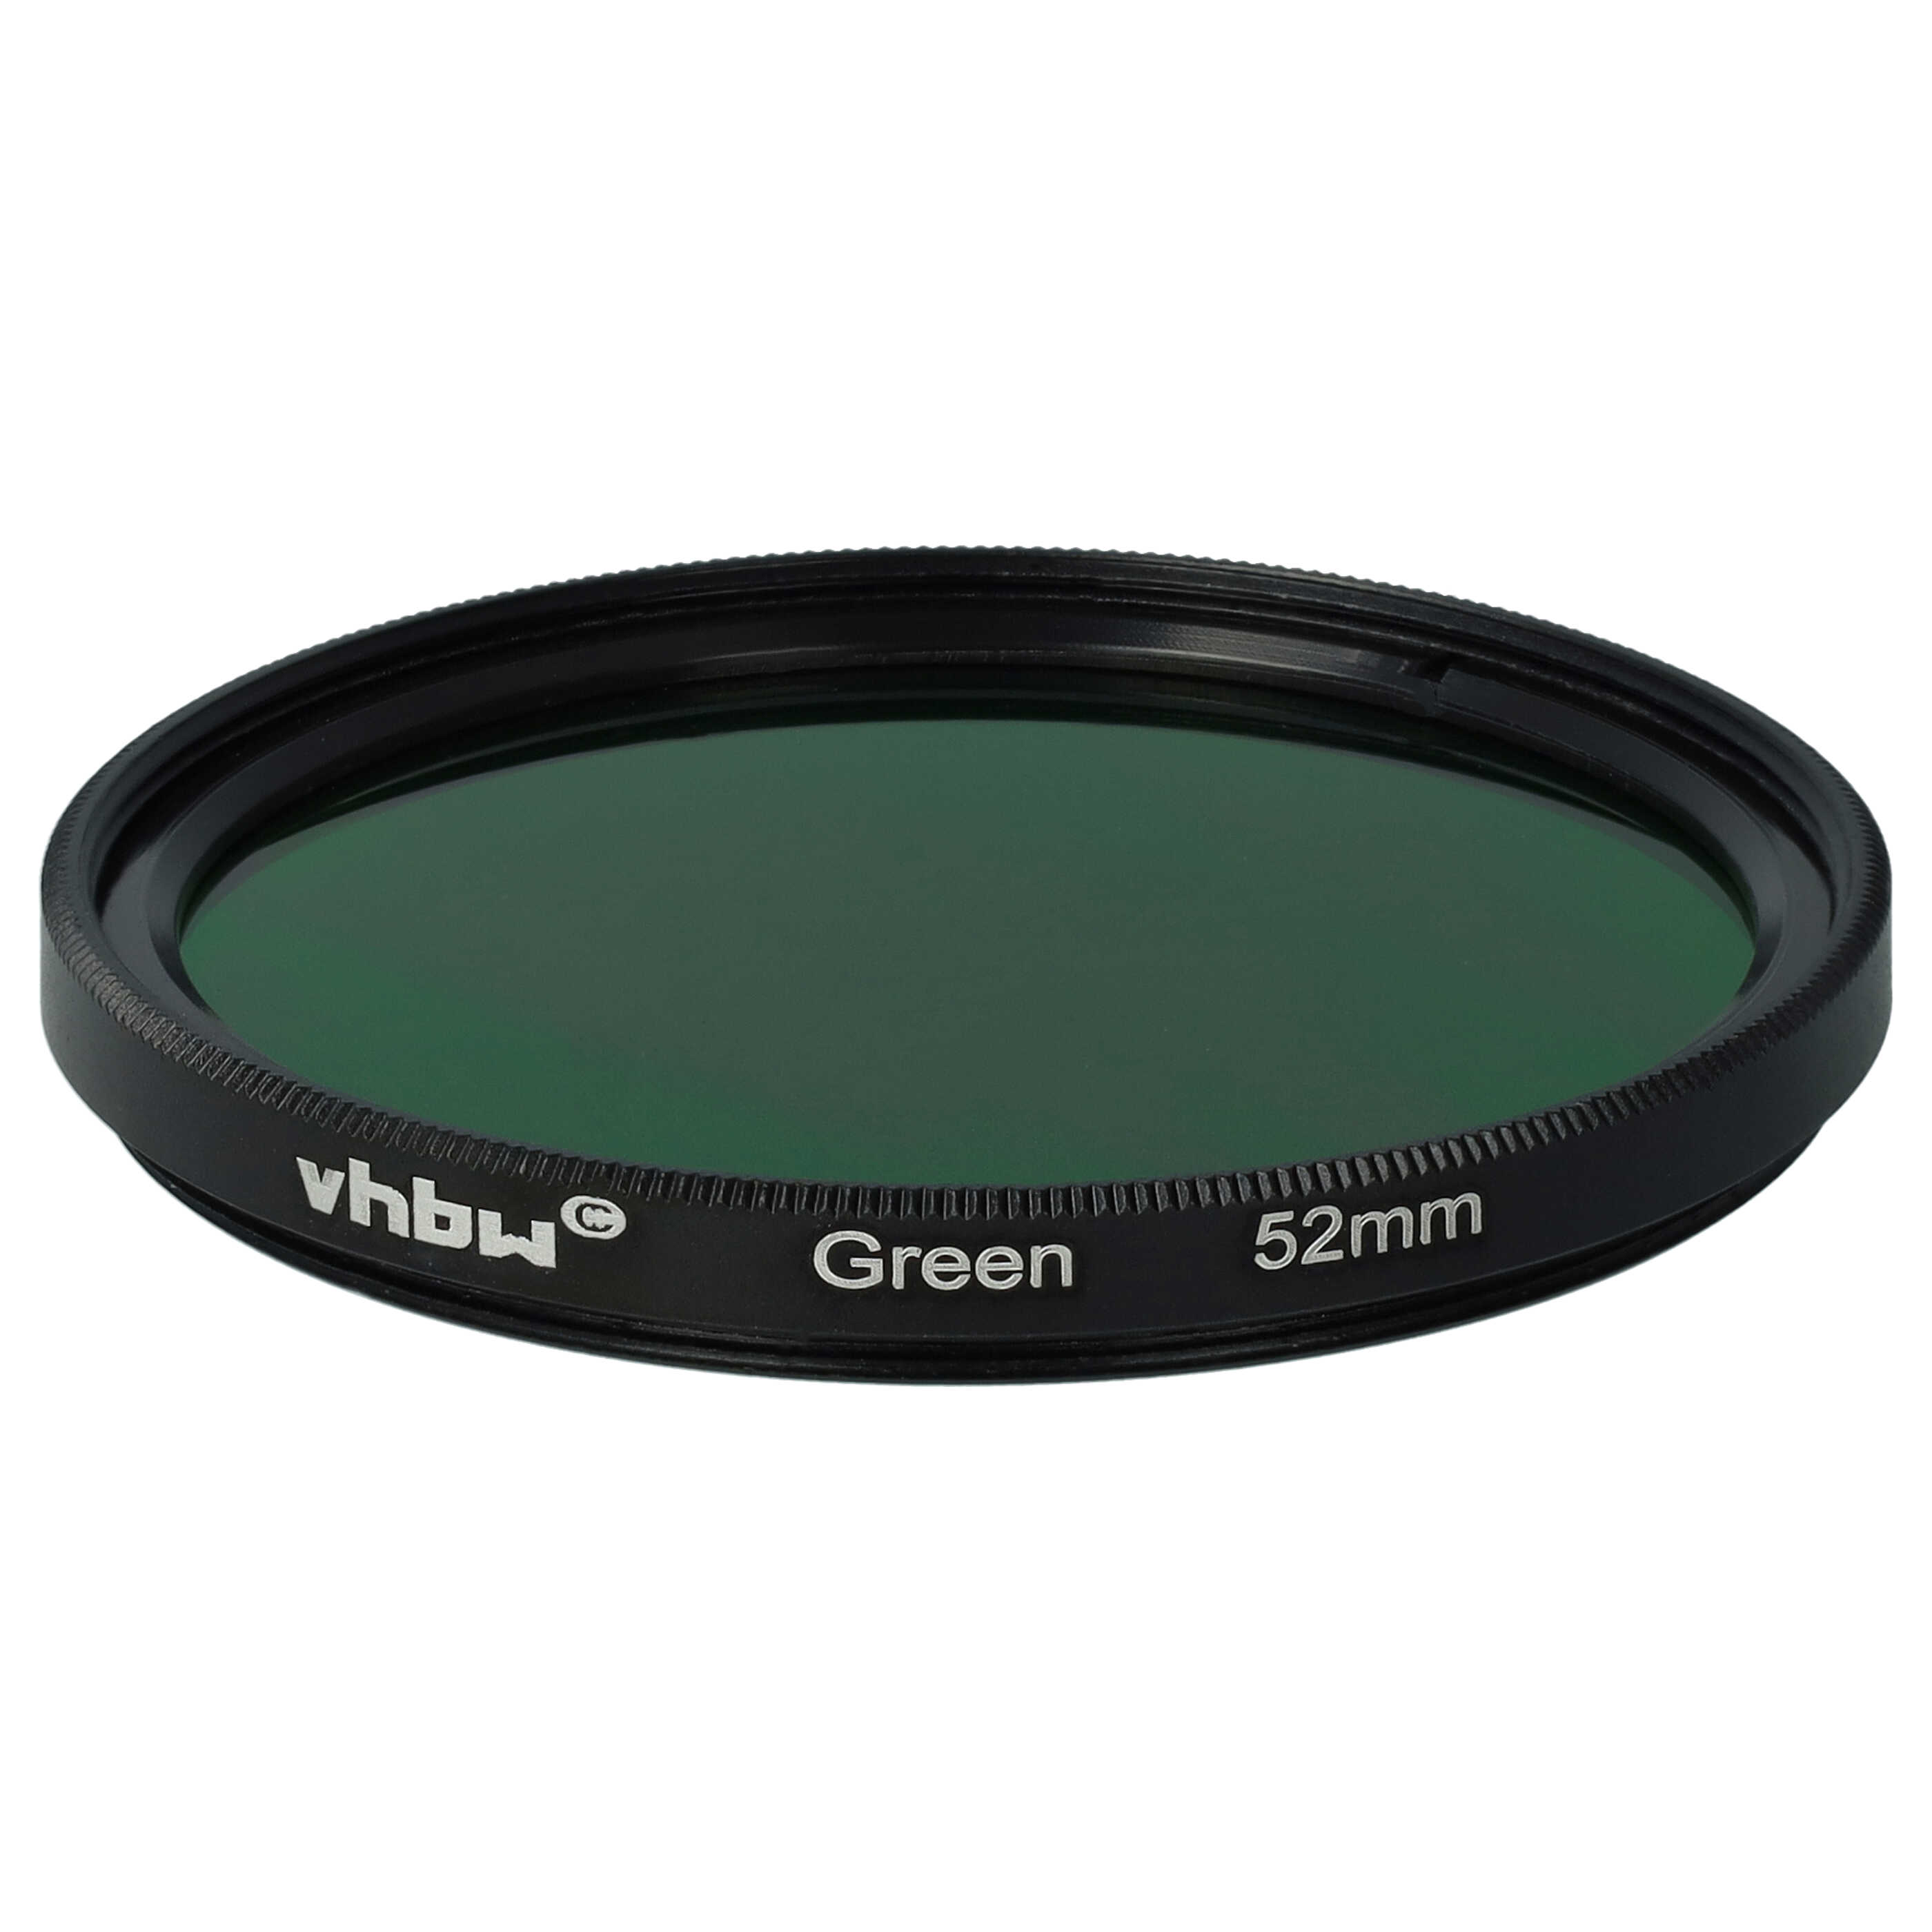 Farbfilter grün passend für Kamera Objektive mit 52 mm Filtergewinde - Grünfilter